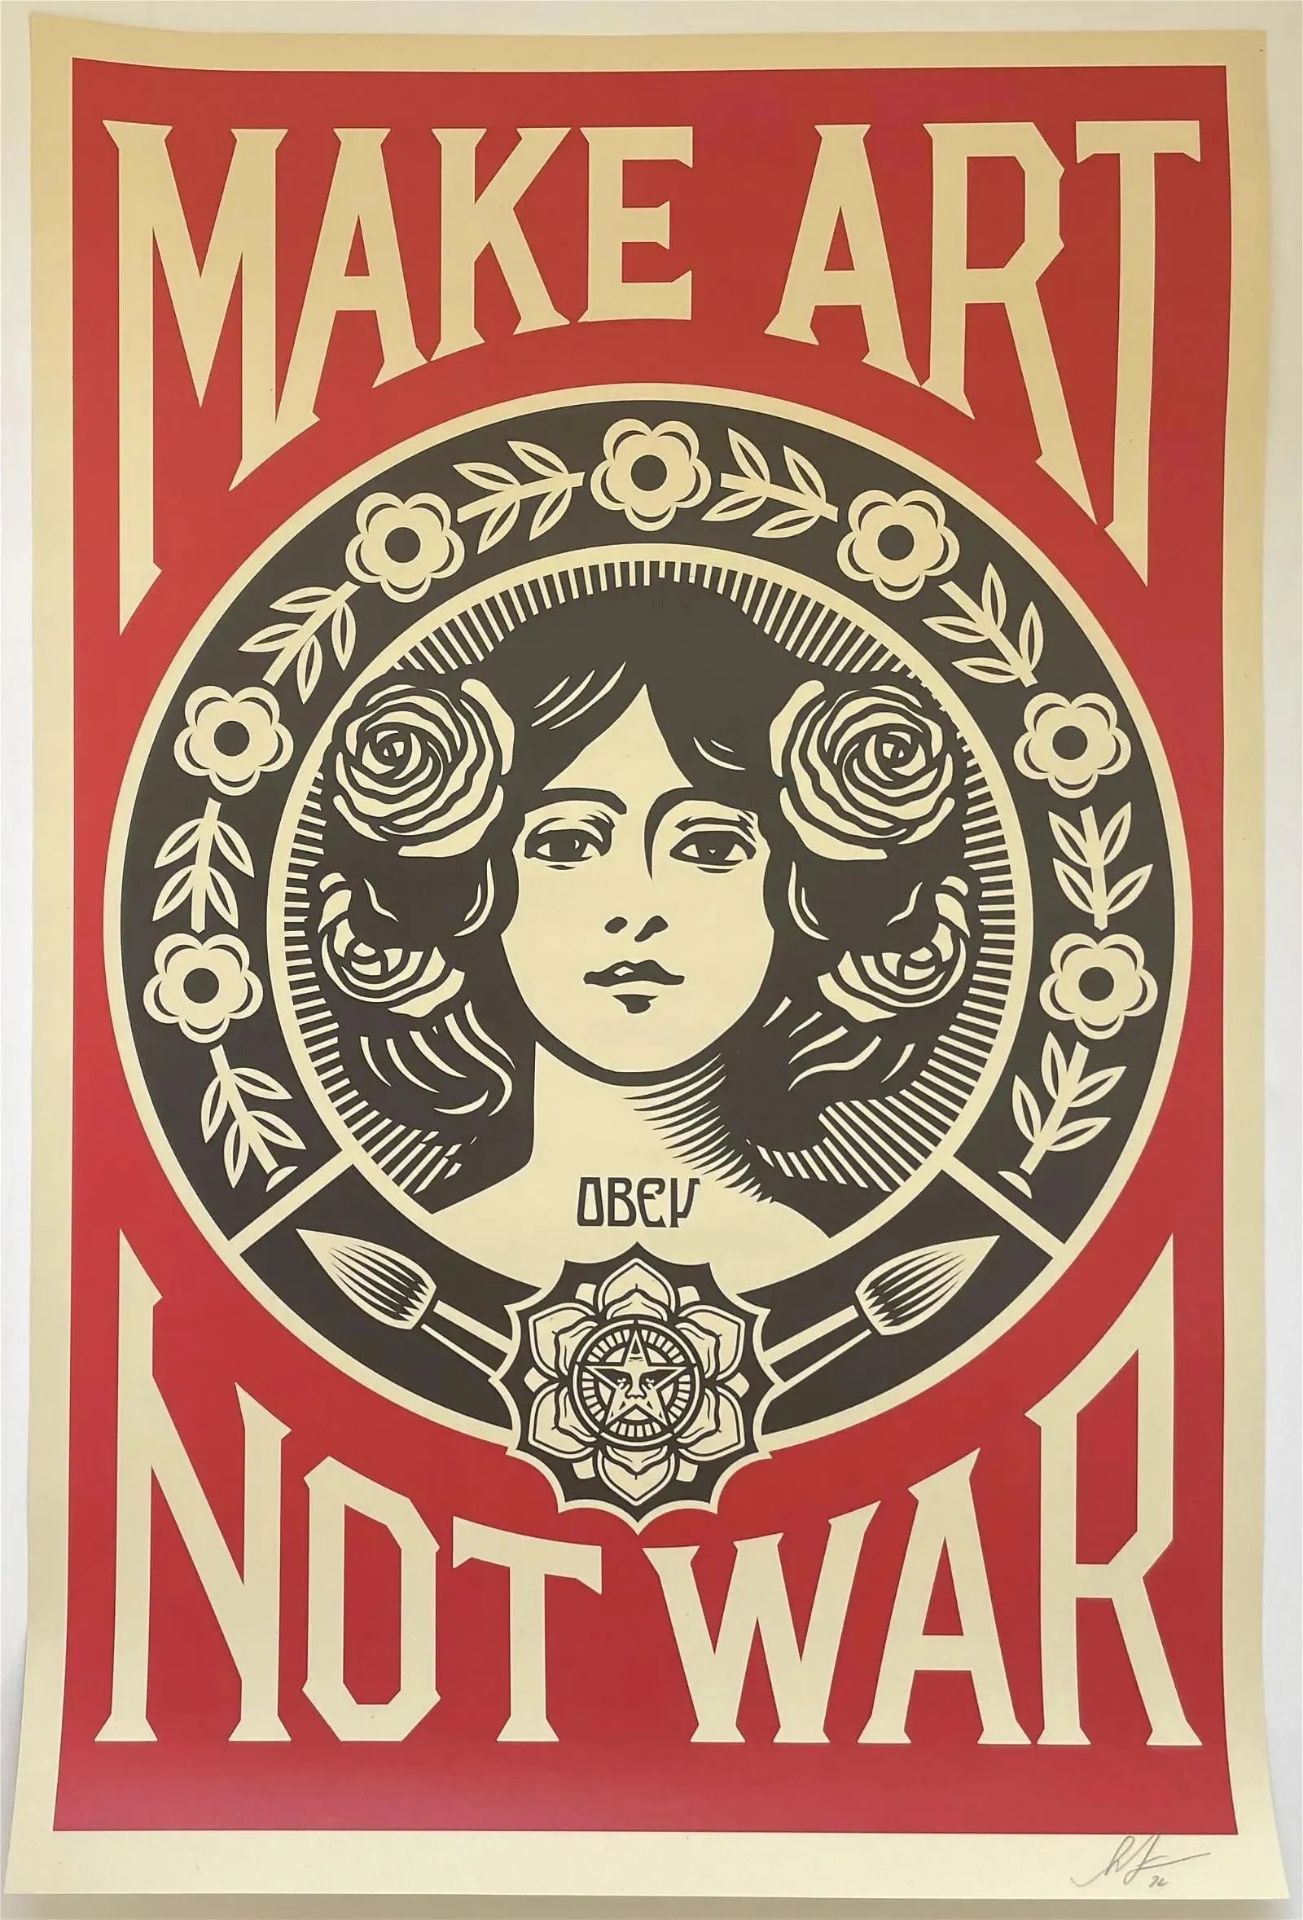 Shepard Fairey Signed "Make Art Not War" Offset Lithograph